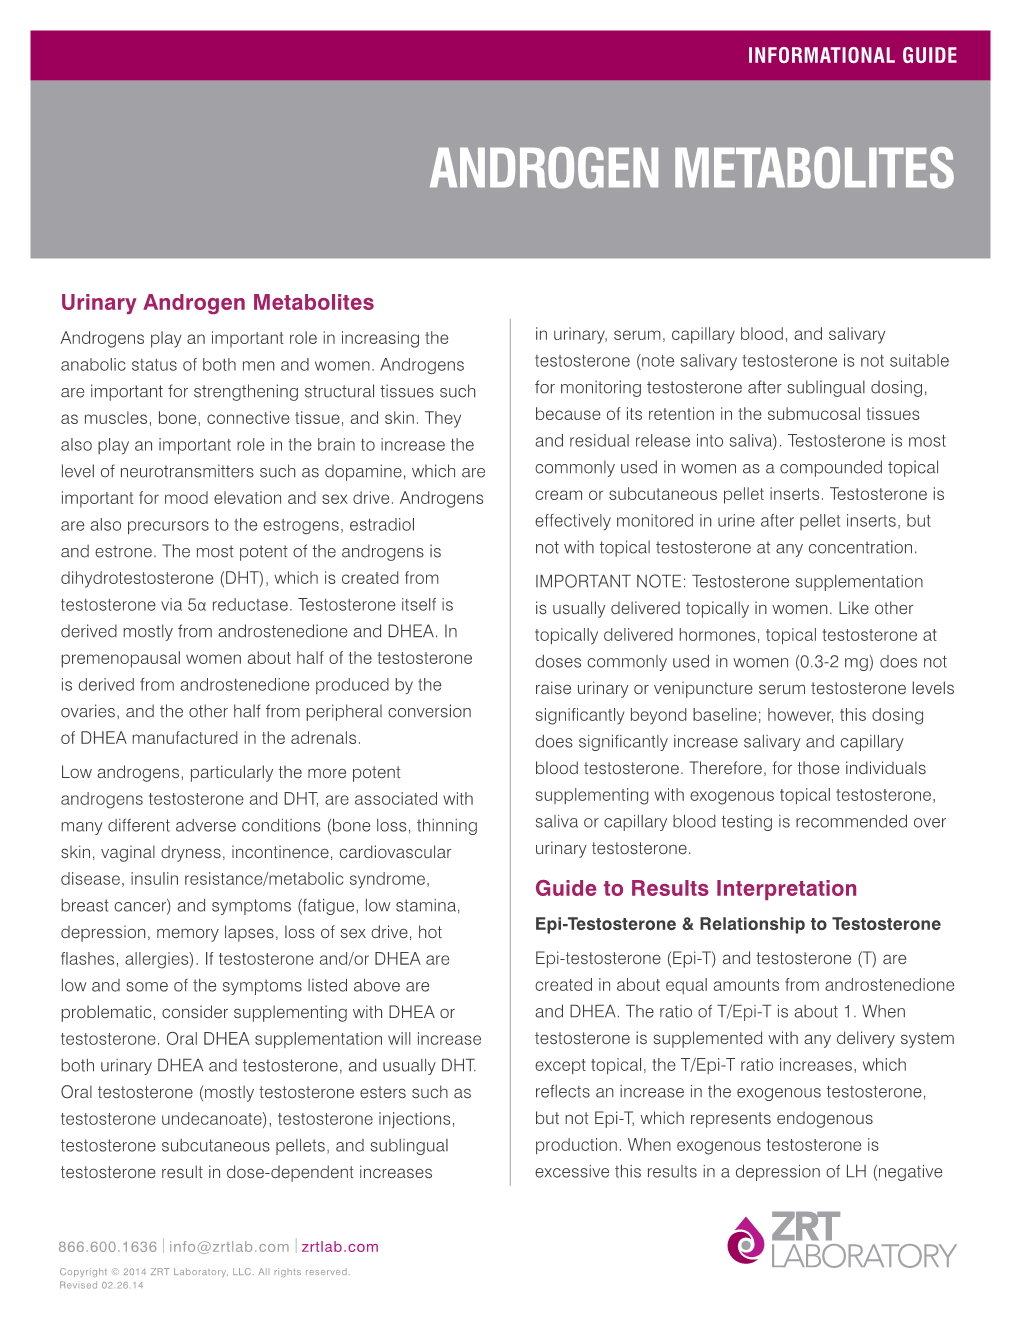 Androgen Metabolites